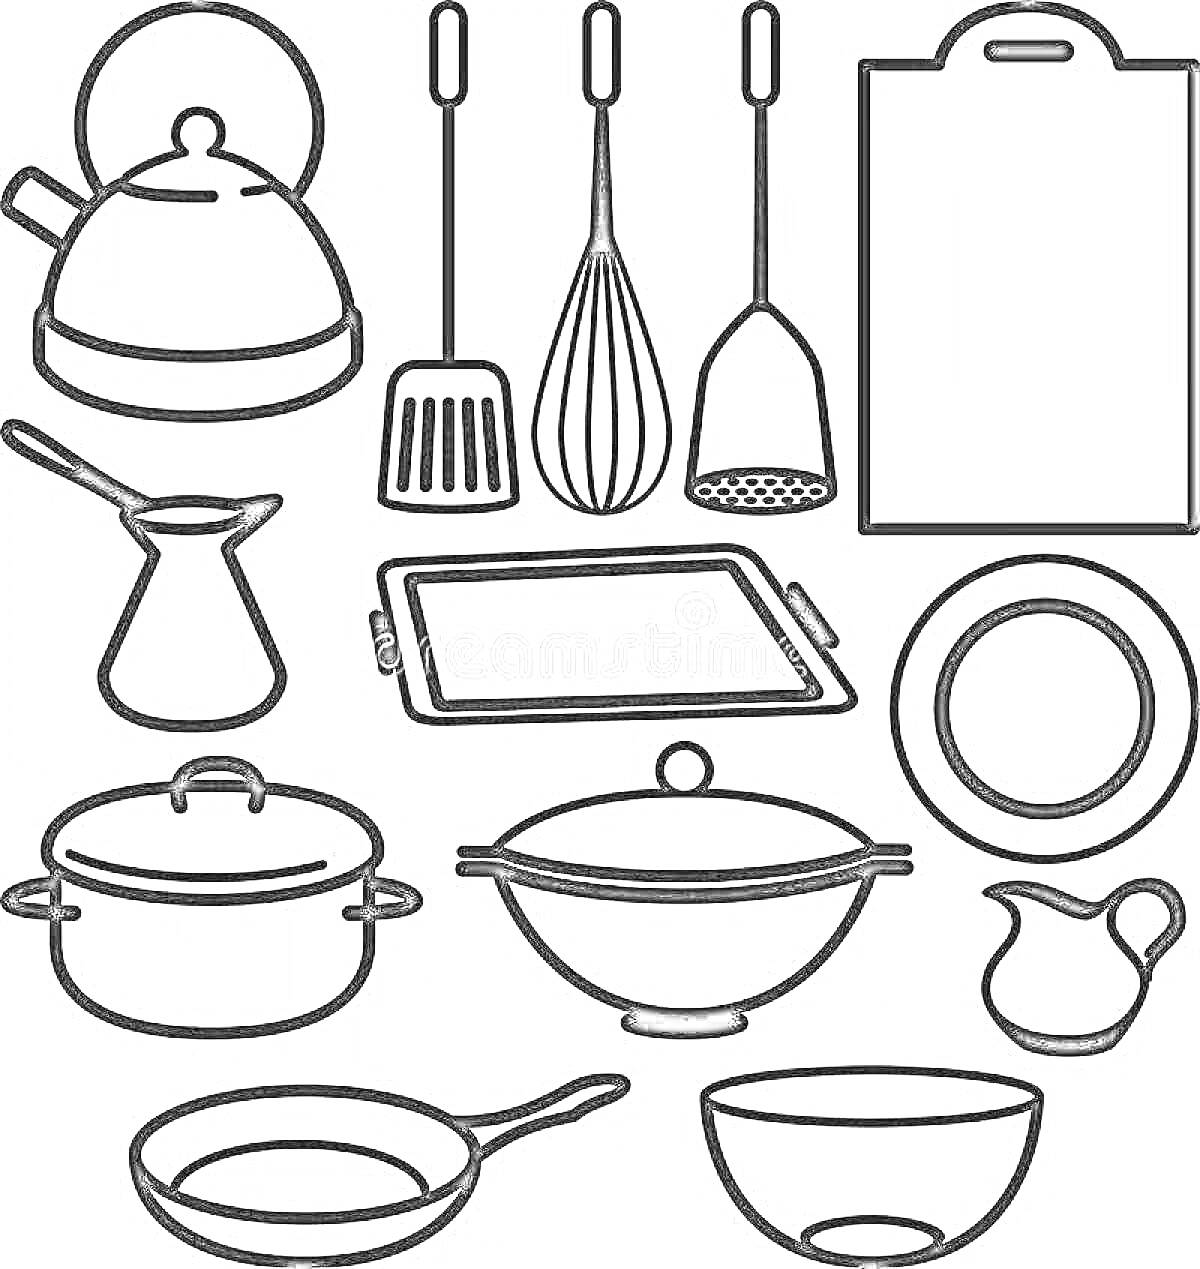 Чайник, лопатка, венчик, шумовка, разделочная доска, джезва, противень, тарелка, кастрюля, сковорода с крышкой, кувшин, сковорода, салатник.